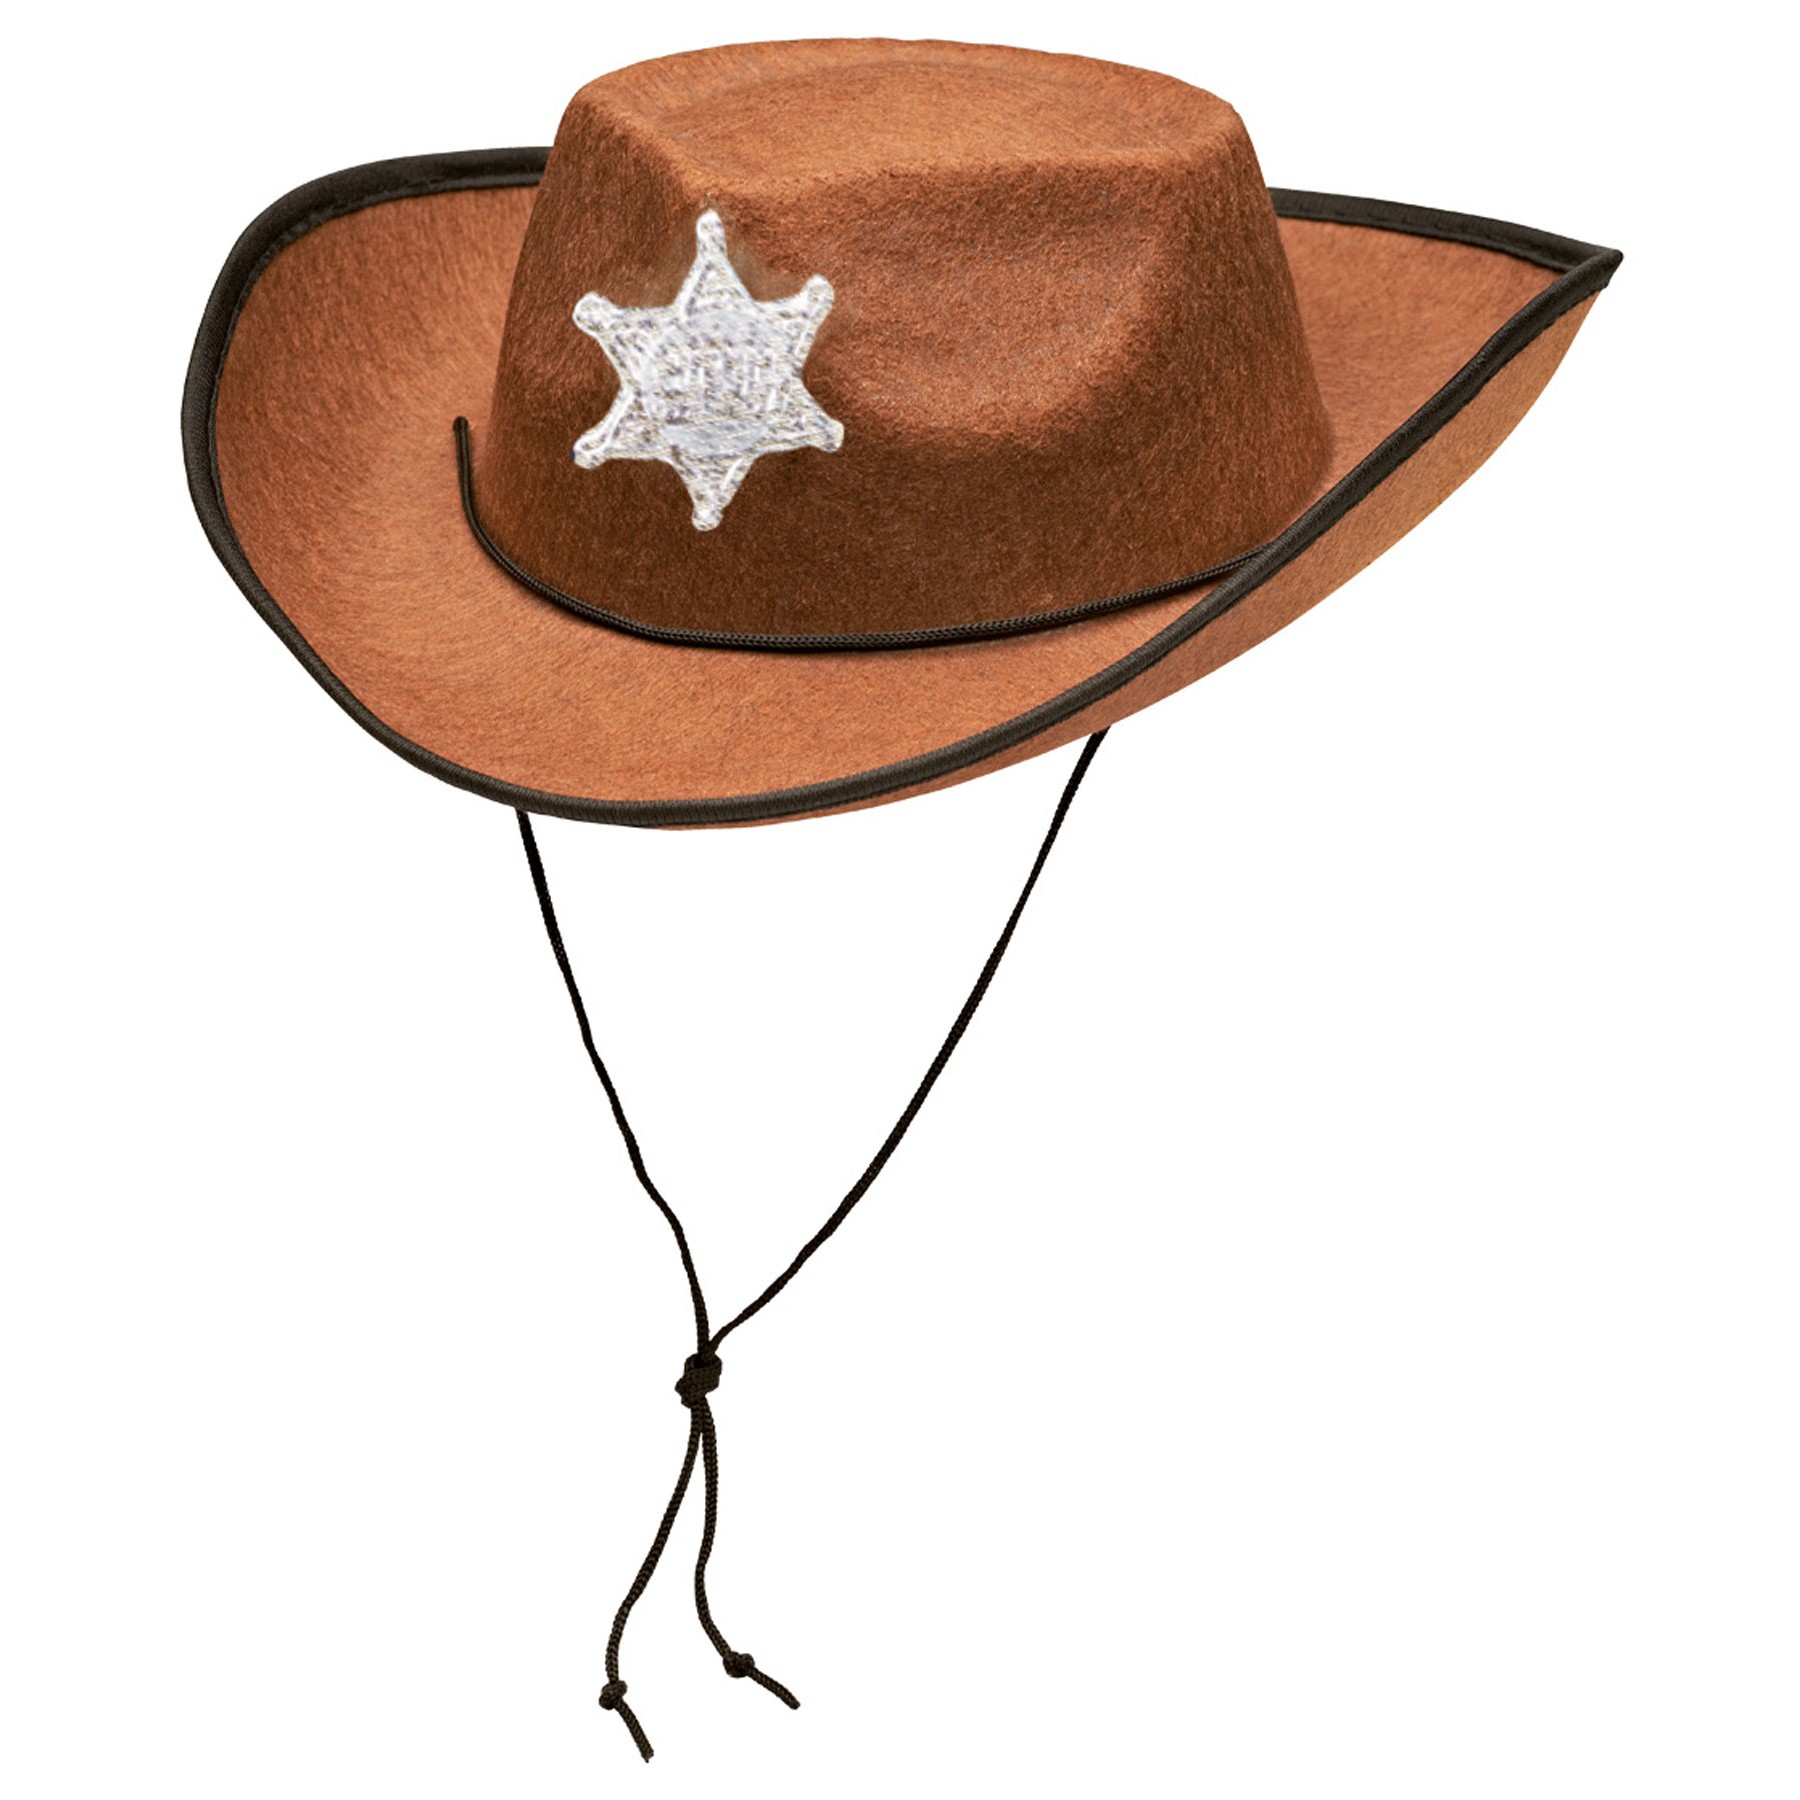 Cowboyhut für Kinder in Braun mit Sheriff Stern